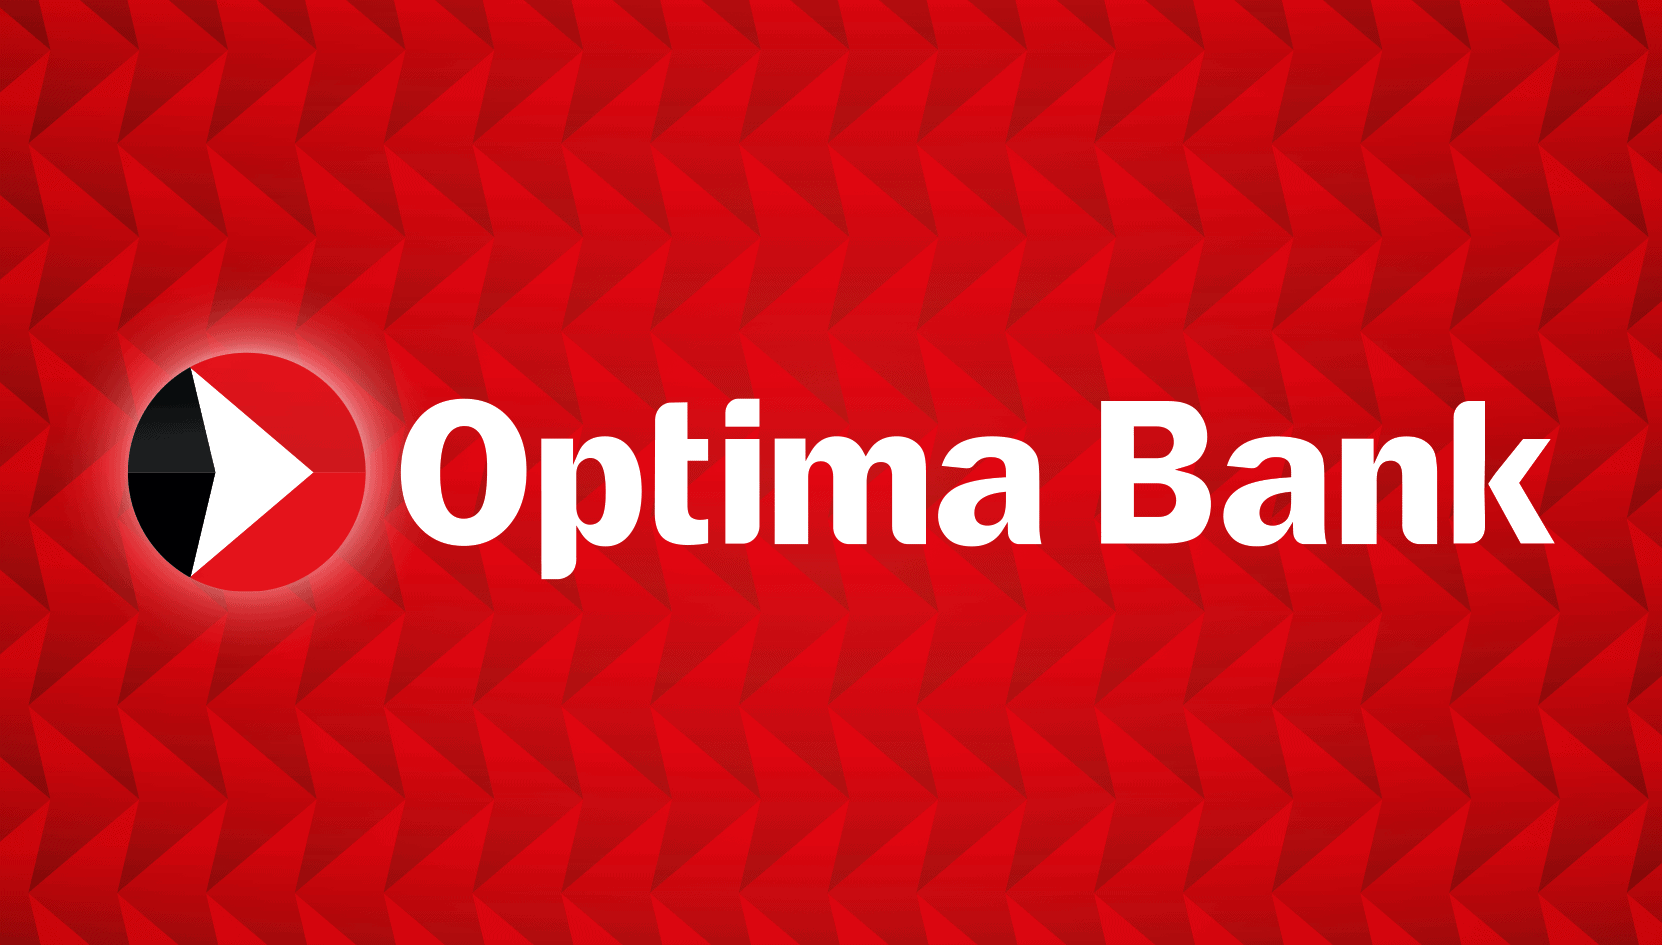 Официальное обращение «Оптима Банка» изображение публикации